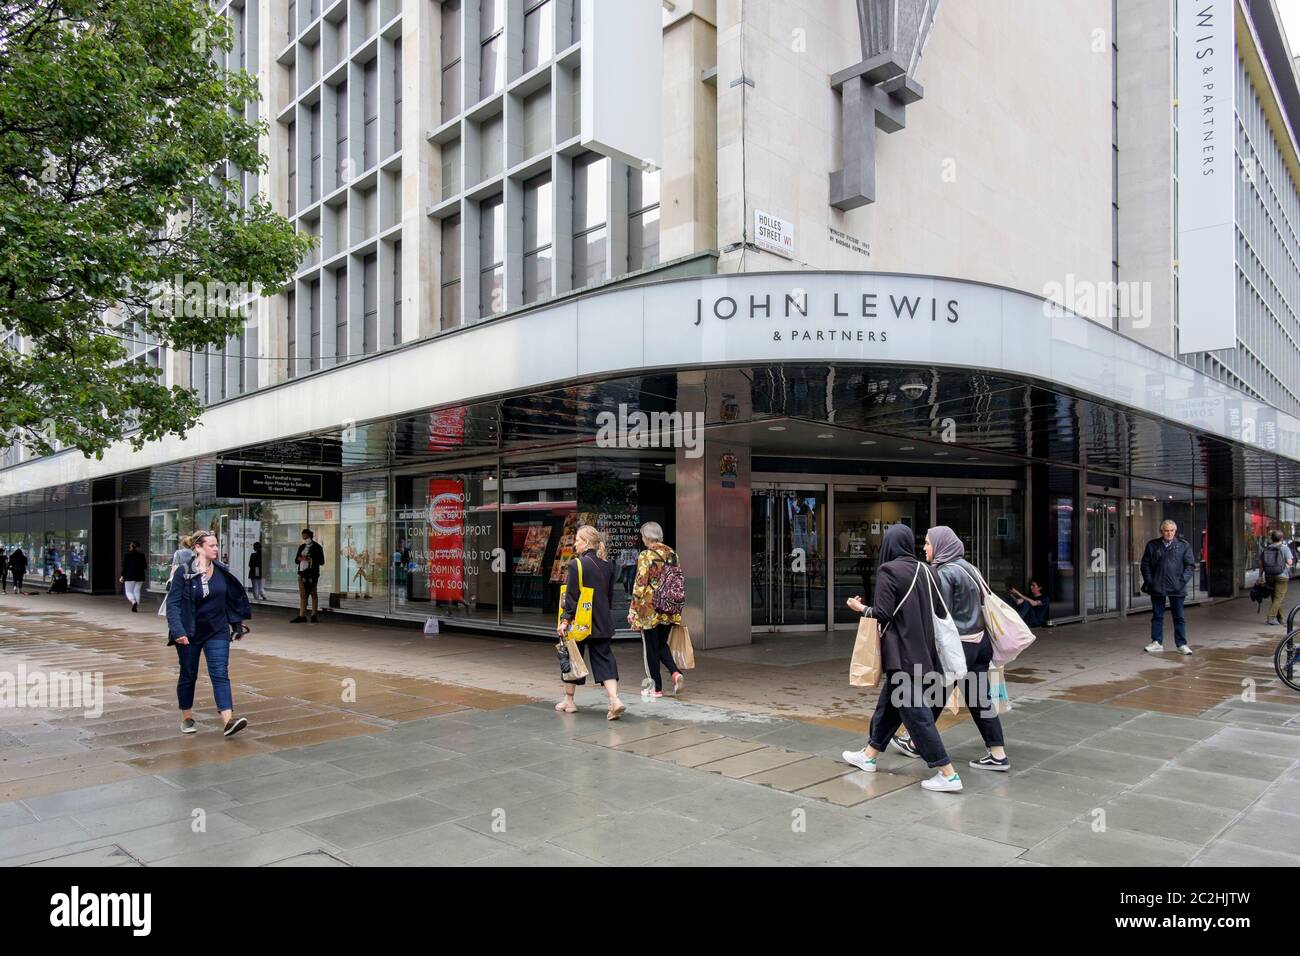 Juni 2020. Trotz der Lockerung der Covid-19-Sperrmaßnahmen, die es nicht unbedingt notwendigen Einzelhandelsgeschäften in England ermöglichen, das John Lewis Kaufhaus in der Oxford Street wieder zu öffnen, bleibt das Kaufhaus geschlossen. London, Großbritannien. Stockfoto